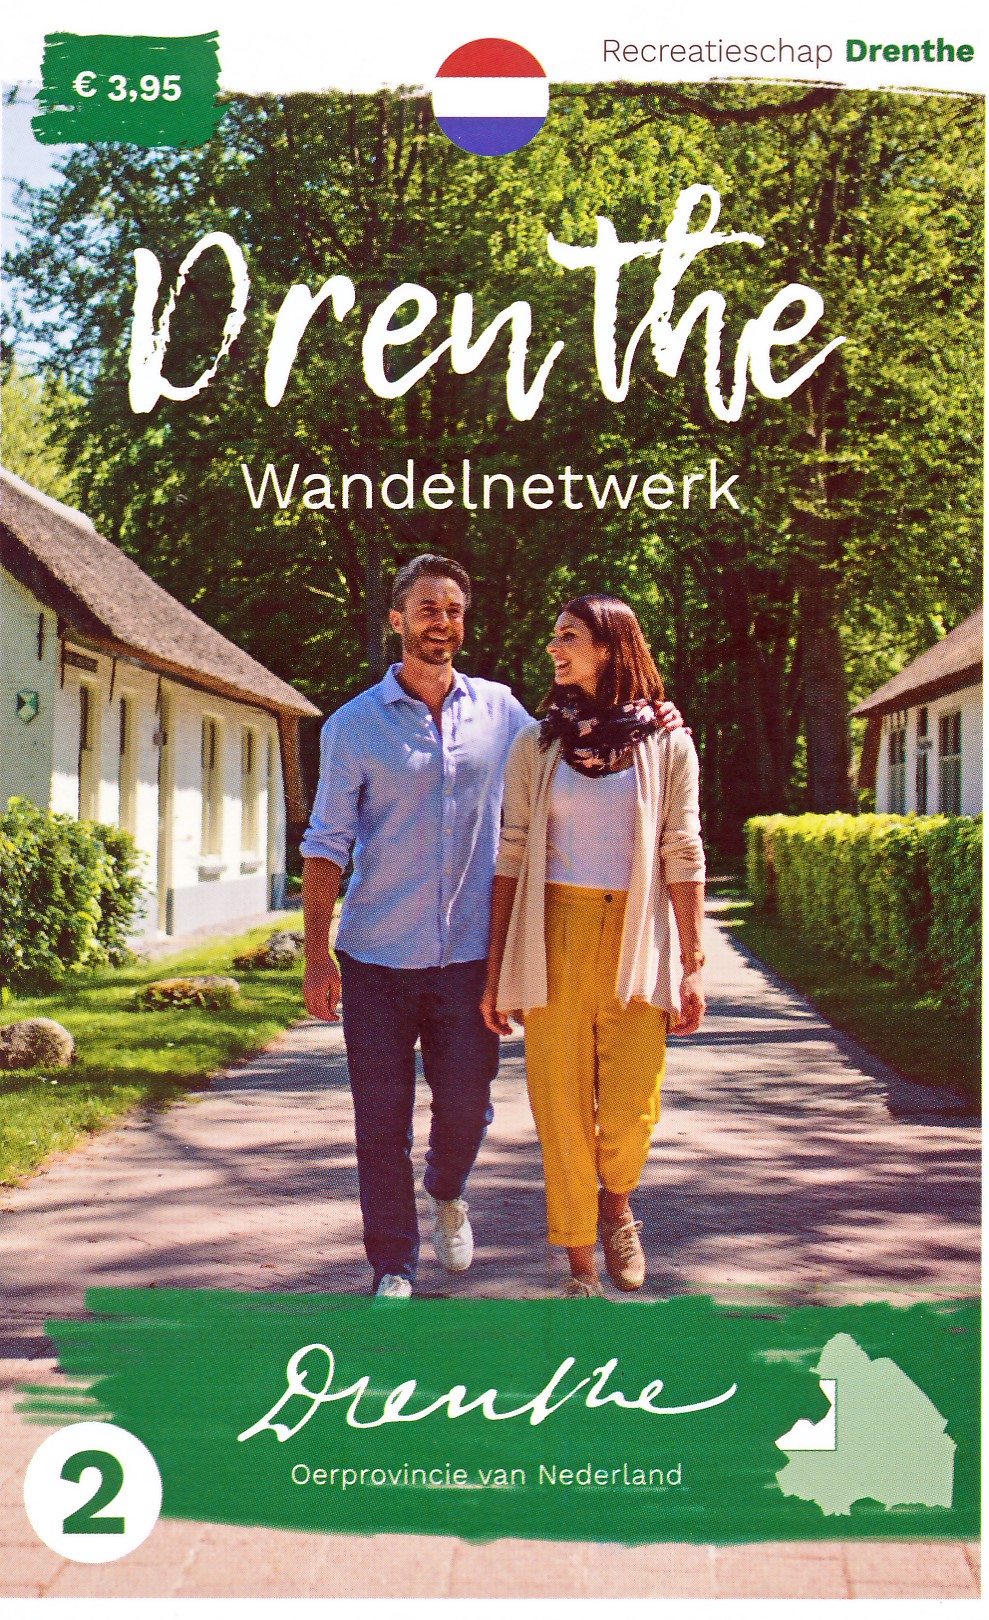 Online bestellen: Wandelknooppuntenkaart 2 Wandelnetwerk Drenthe Vledder - Noordwolde - Appelscha - Dwingeloo | Recreatieschap Drenthe